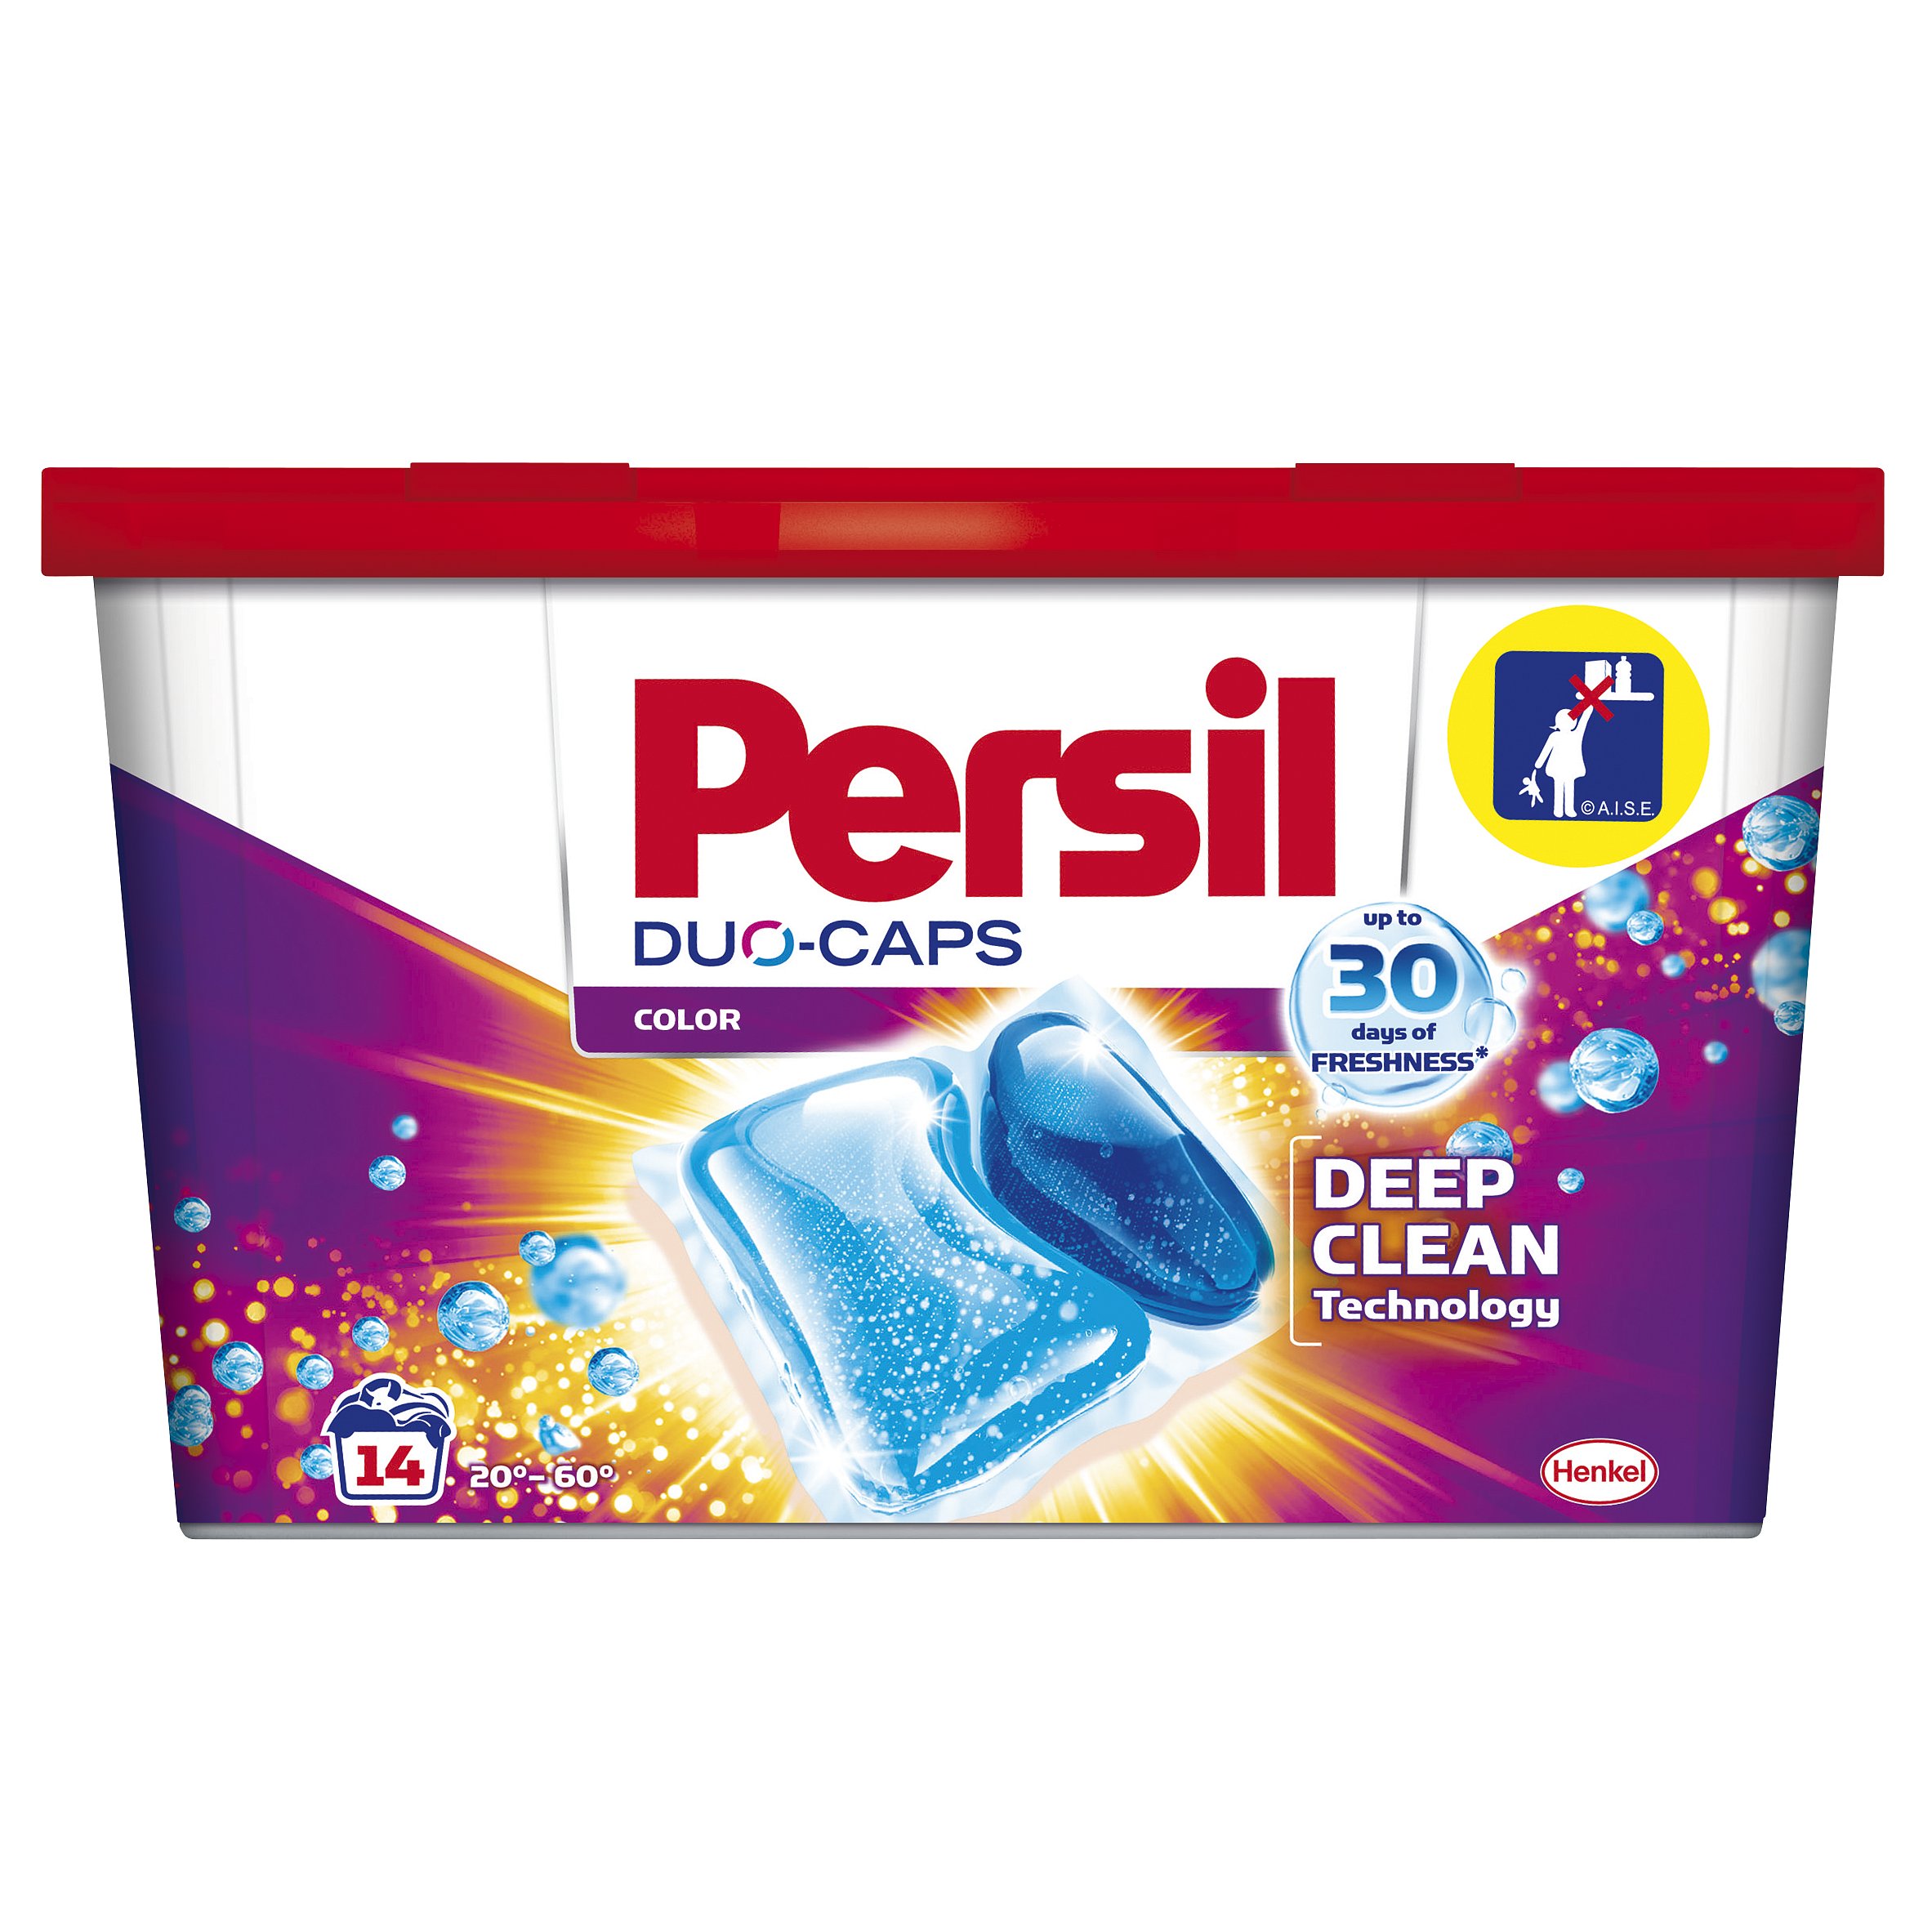 Persil DuoCaps Color kapsle na praní, 14 praní 14 ks